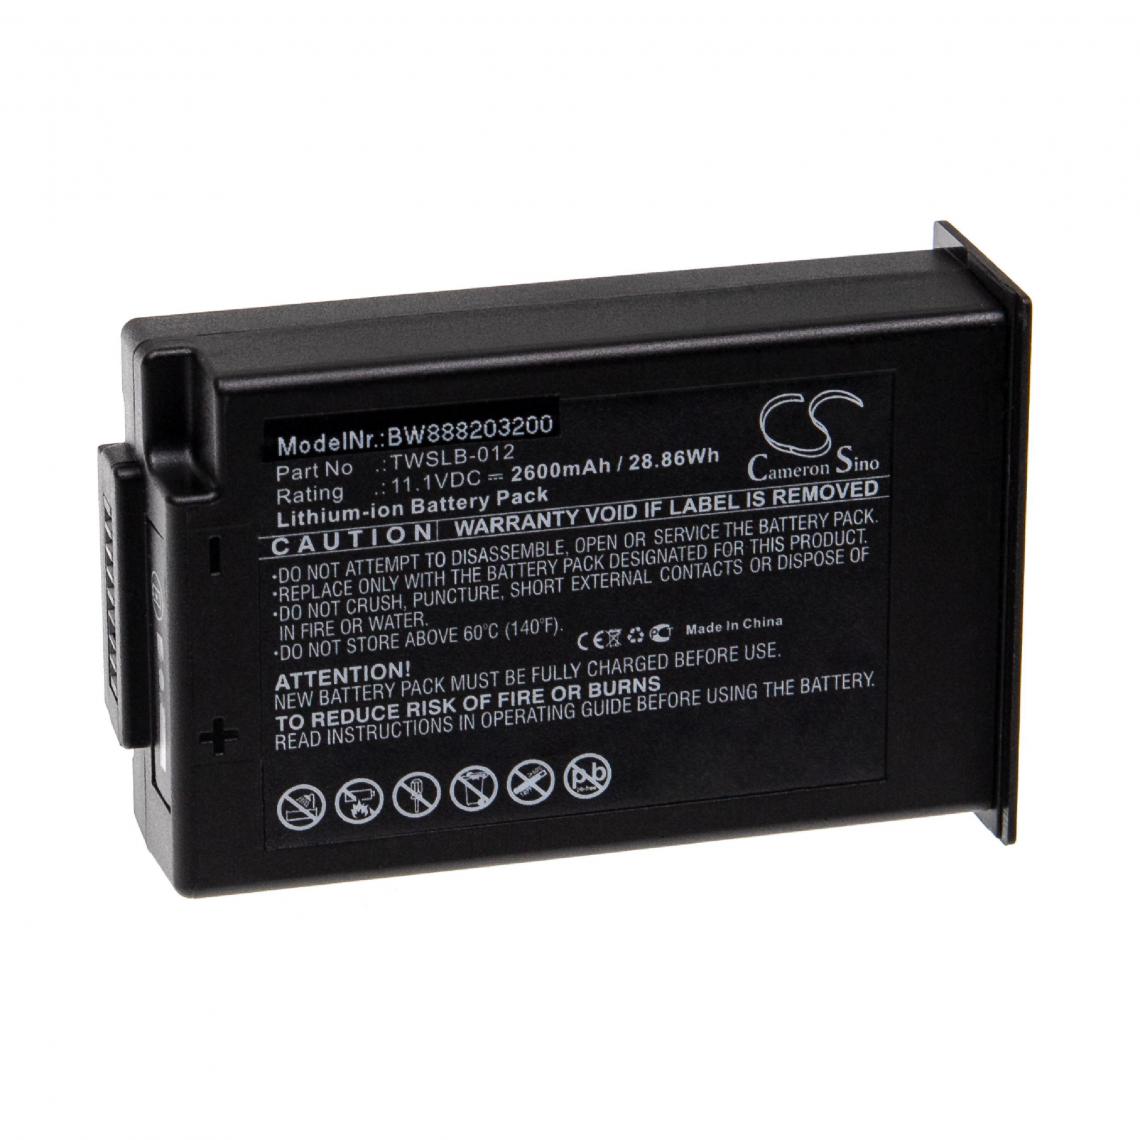 Vhbw - vhbw Batterie remplacement pour Edan TWSLB-012 pour appareil médical (2600mAh, 11,1V, Li-ion) - Piles spécifiques